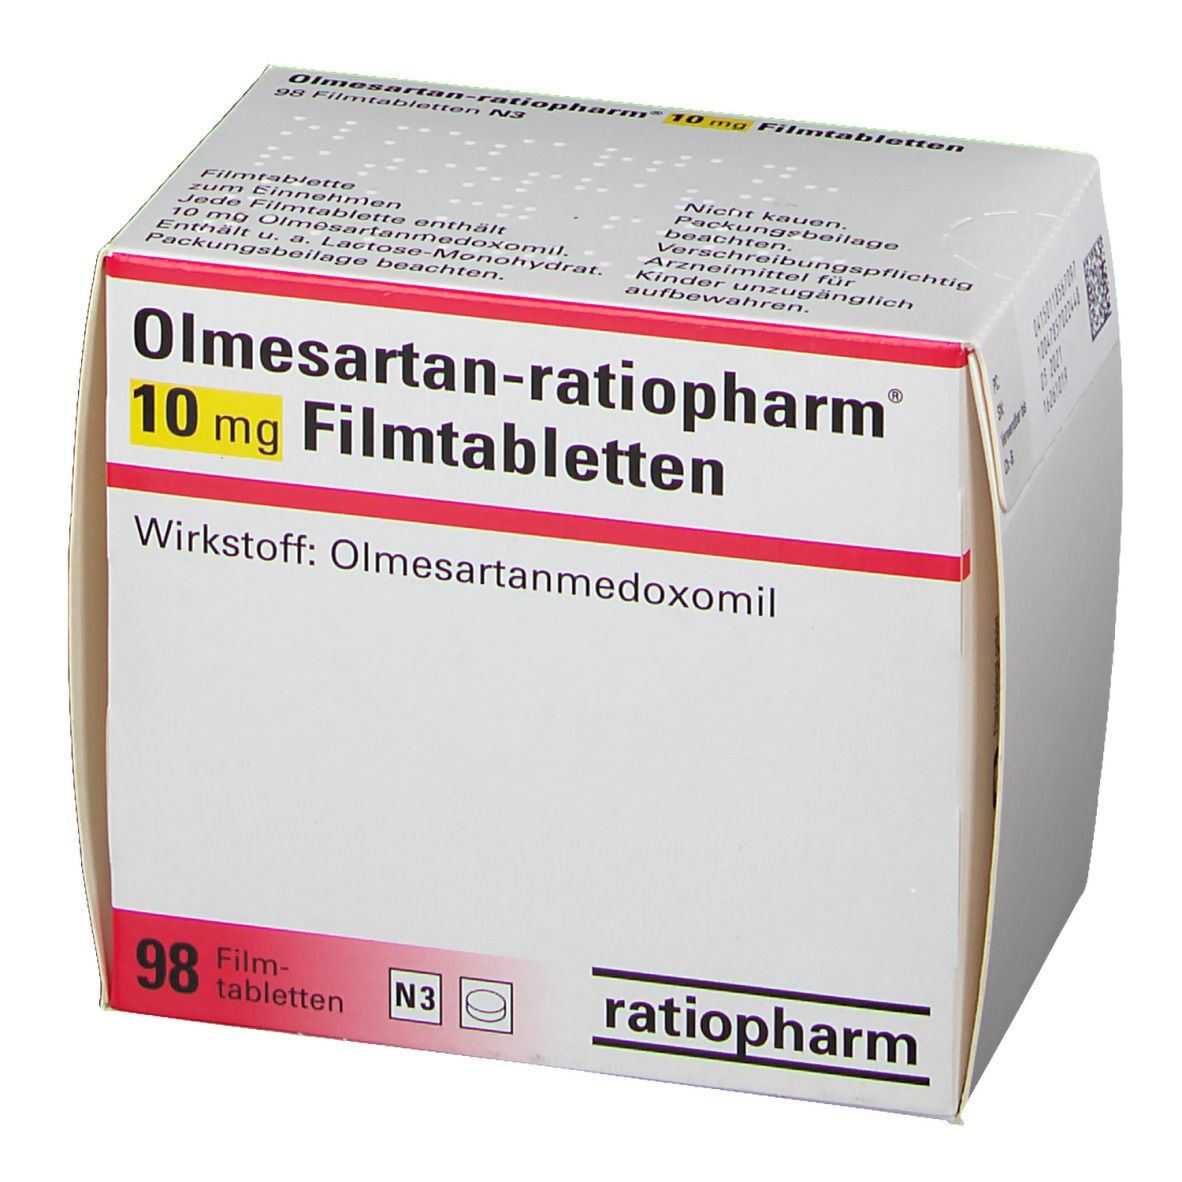 Olmesartan-ratiopharm® 10 mg